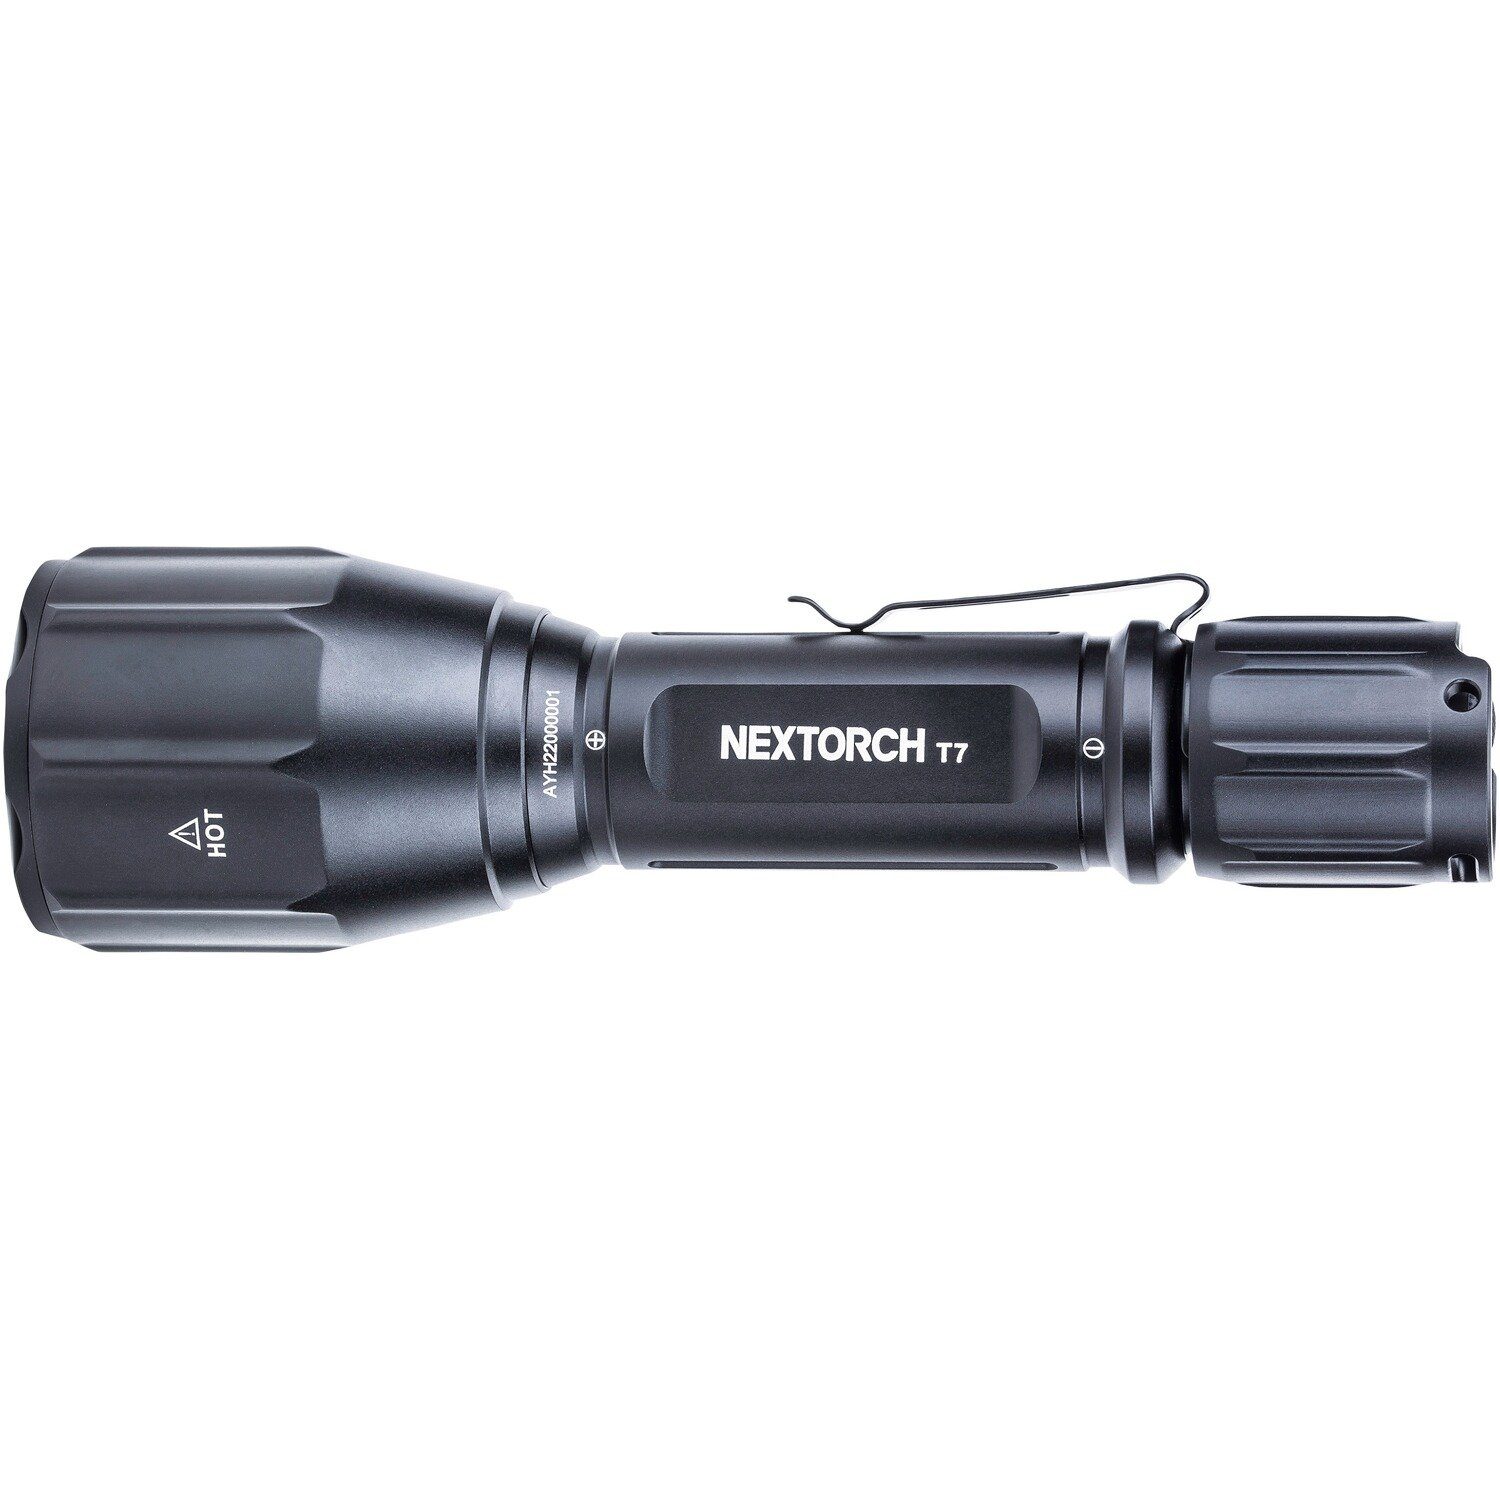 Nextorch Taschenlampe Set Nextorch Lampe T7 V2.0